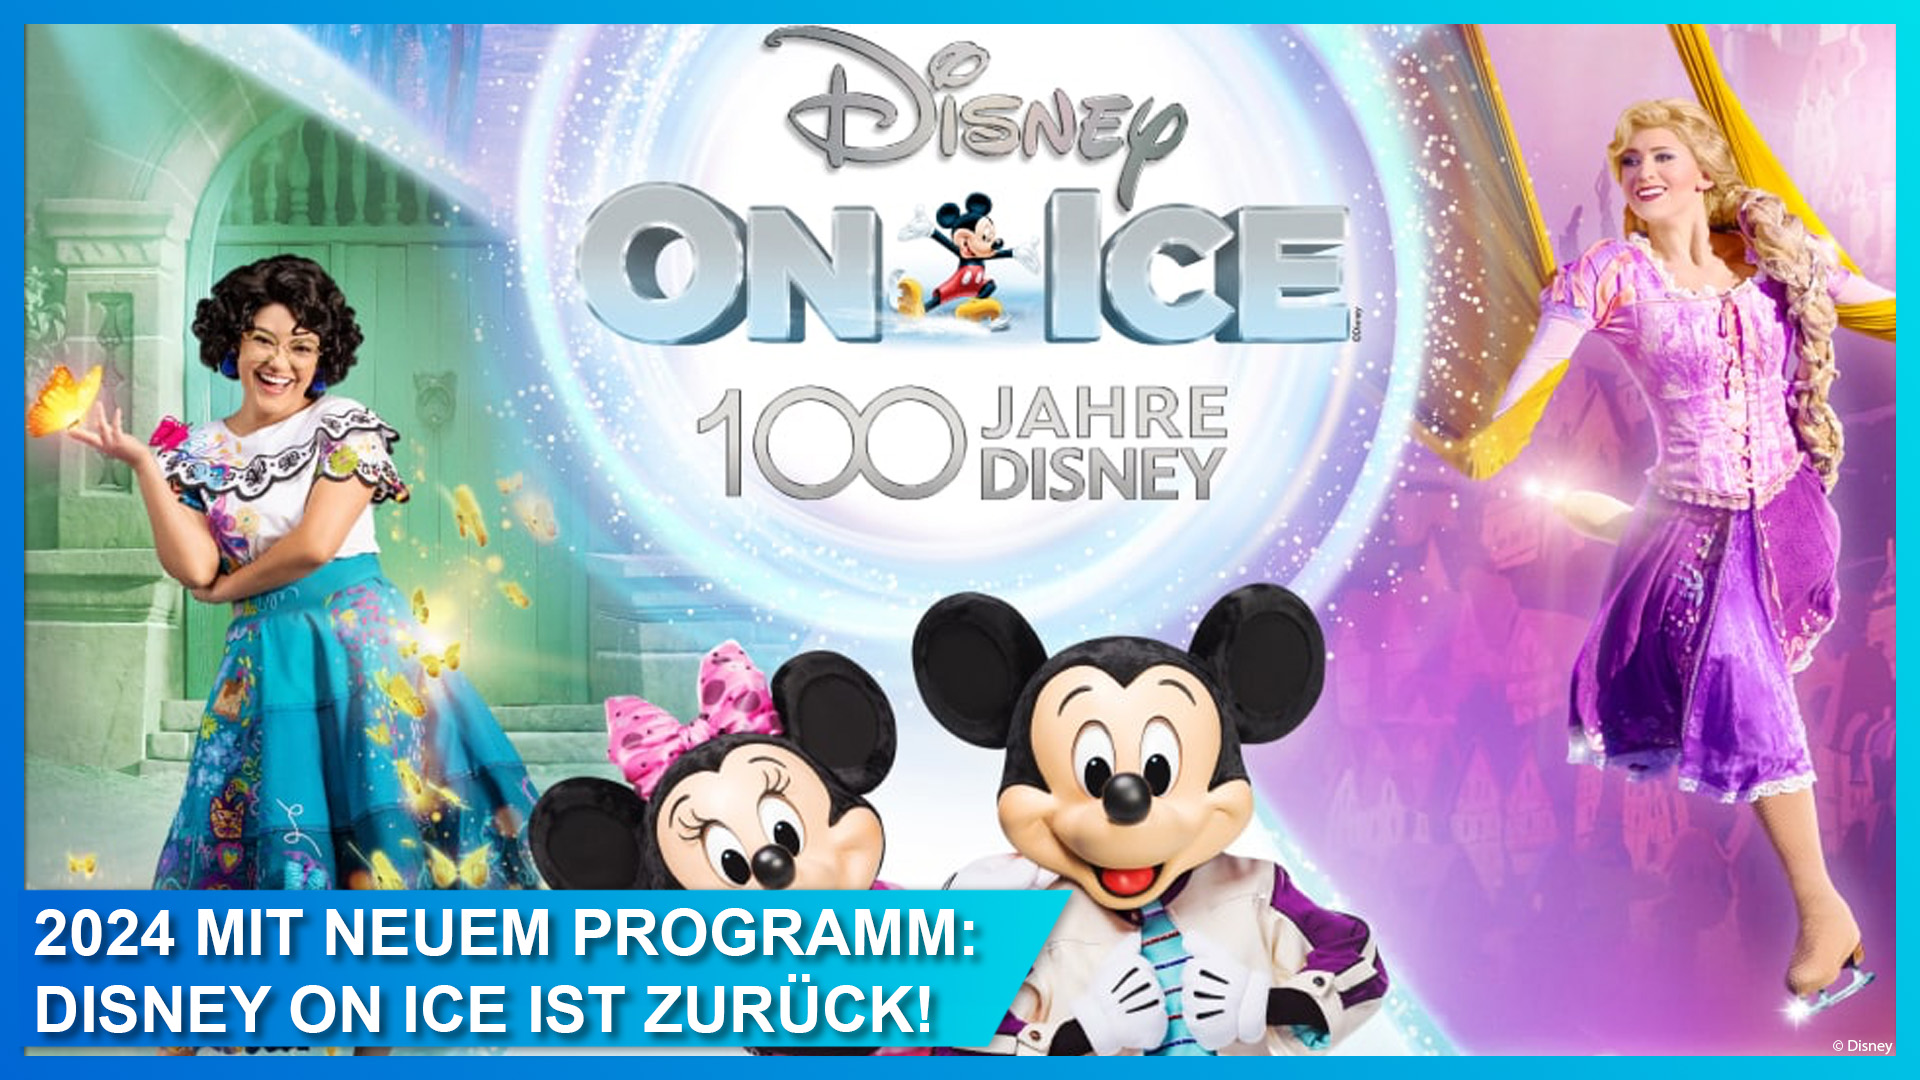 Disney on Ice: 100 Jahre Disney im März 2024 in Berlin, Düsseldorf, München und Zürich erleben. Tickets jetzt erhältlich.